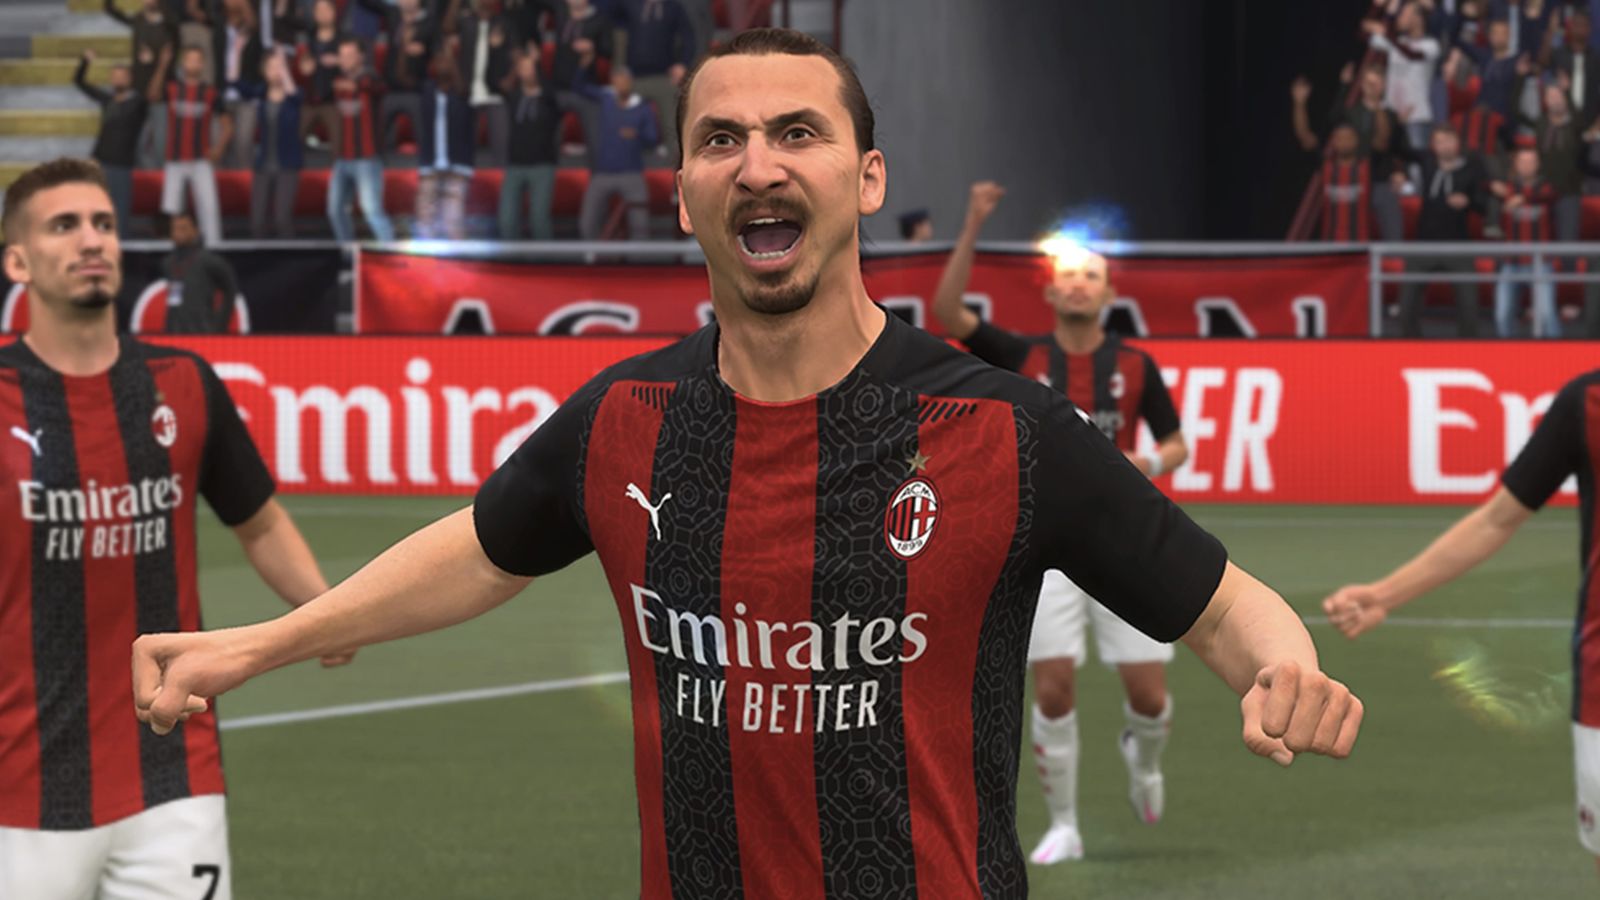 Zlatan Ibrahimovic chỉ trích nhà sản xuất game FIFA 21 vì sử dụng hình ảnh của anh mà không xin phép.